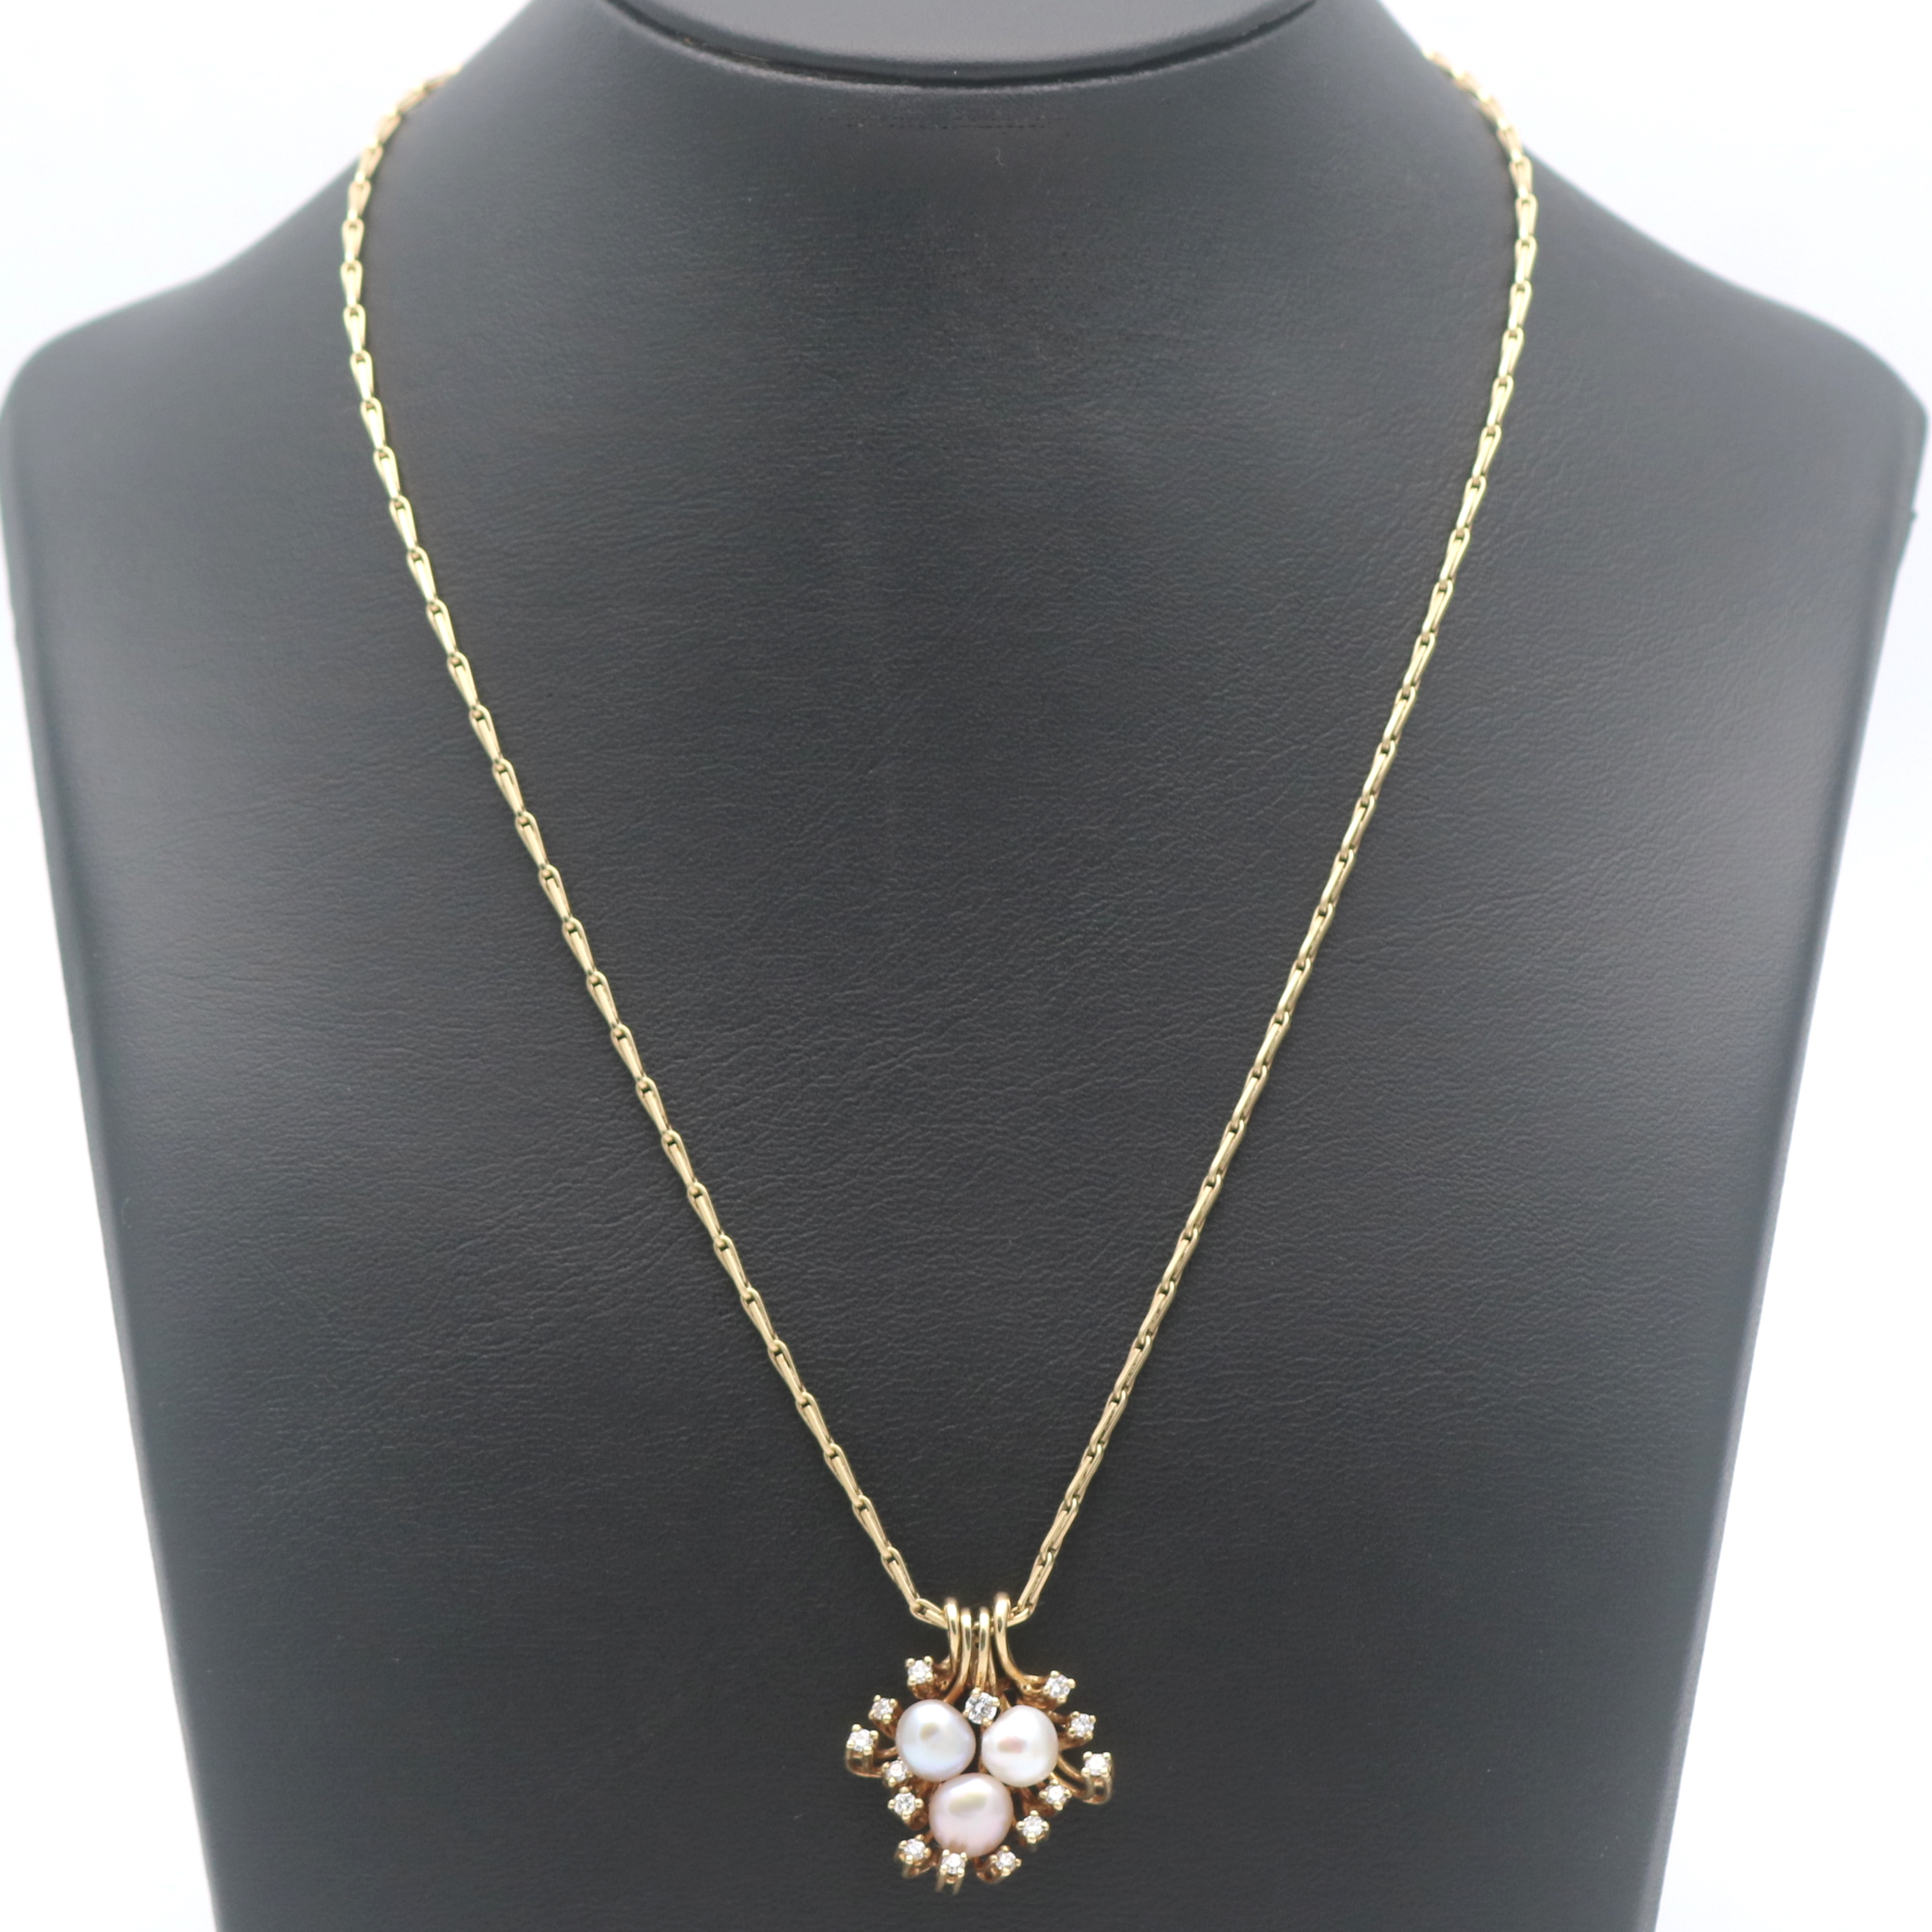 Diamant Perlen Anhänger mit Kette 750 Gold Brillant 18 Kt Zuchtperle Wert  2100,-, Ketten & Colliers, Damenschmuck, Schmuck